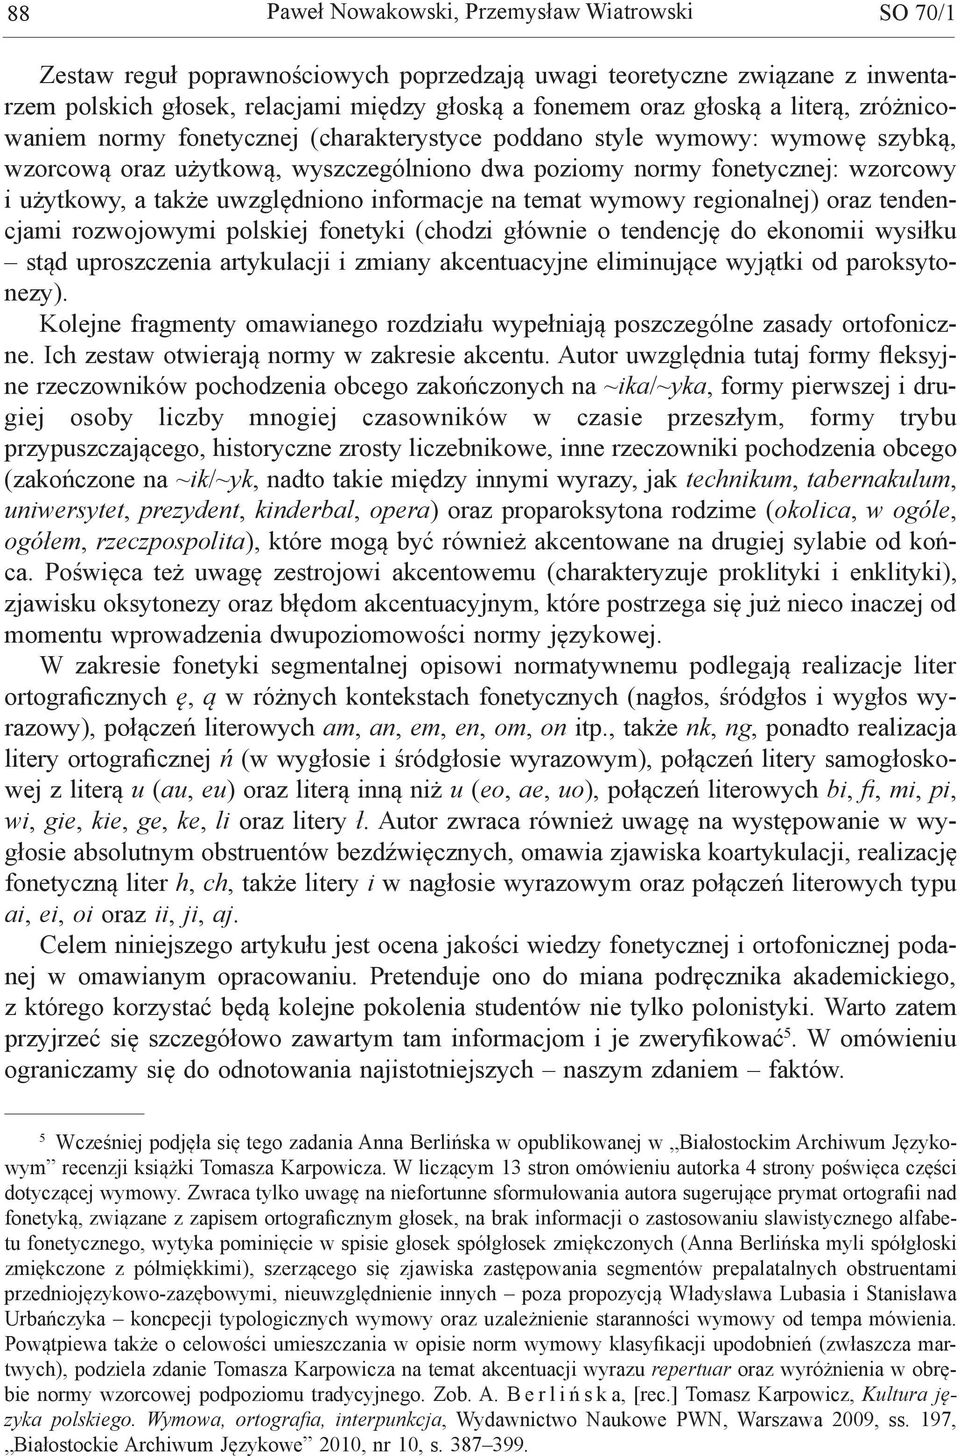 uwzględniono informacje na temat wymowy regionalnej) oraz tendencjami rozwojowymi polskiej fonetyki (chodzi głównie o tendencję do ekonomii wysiłku stąd uproszczenia artykulacji i zmiany